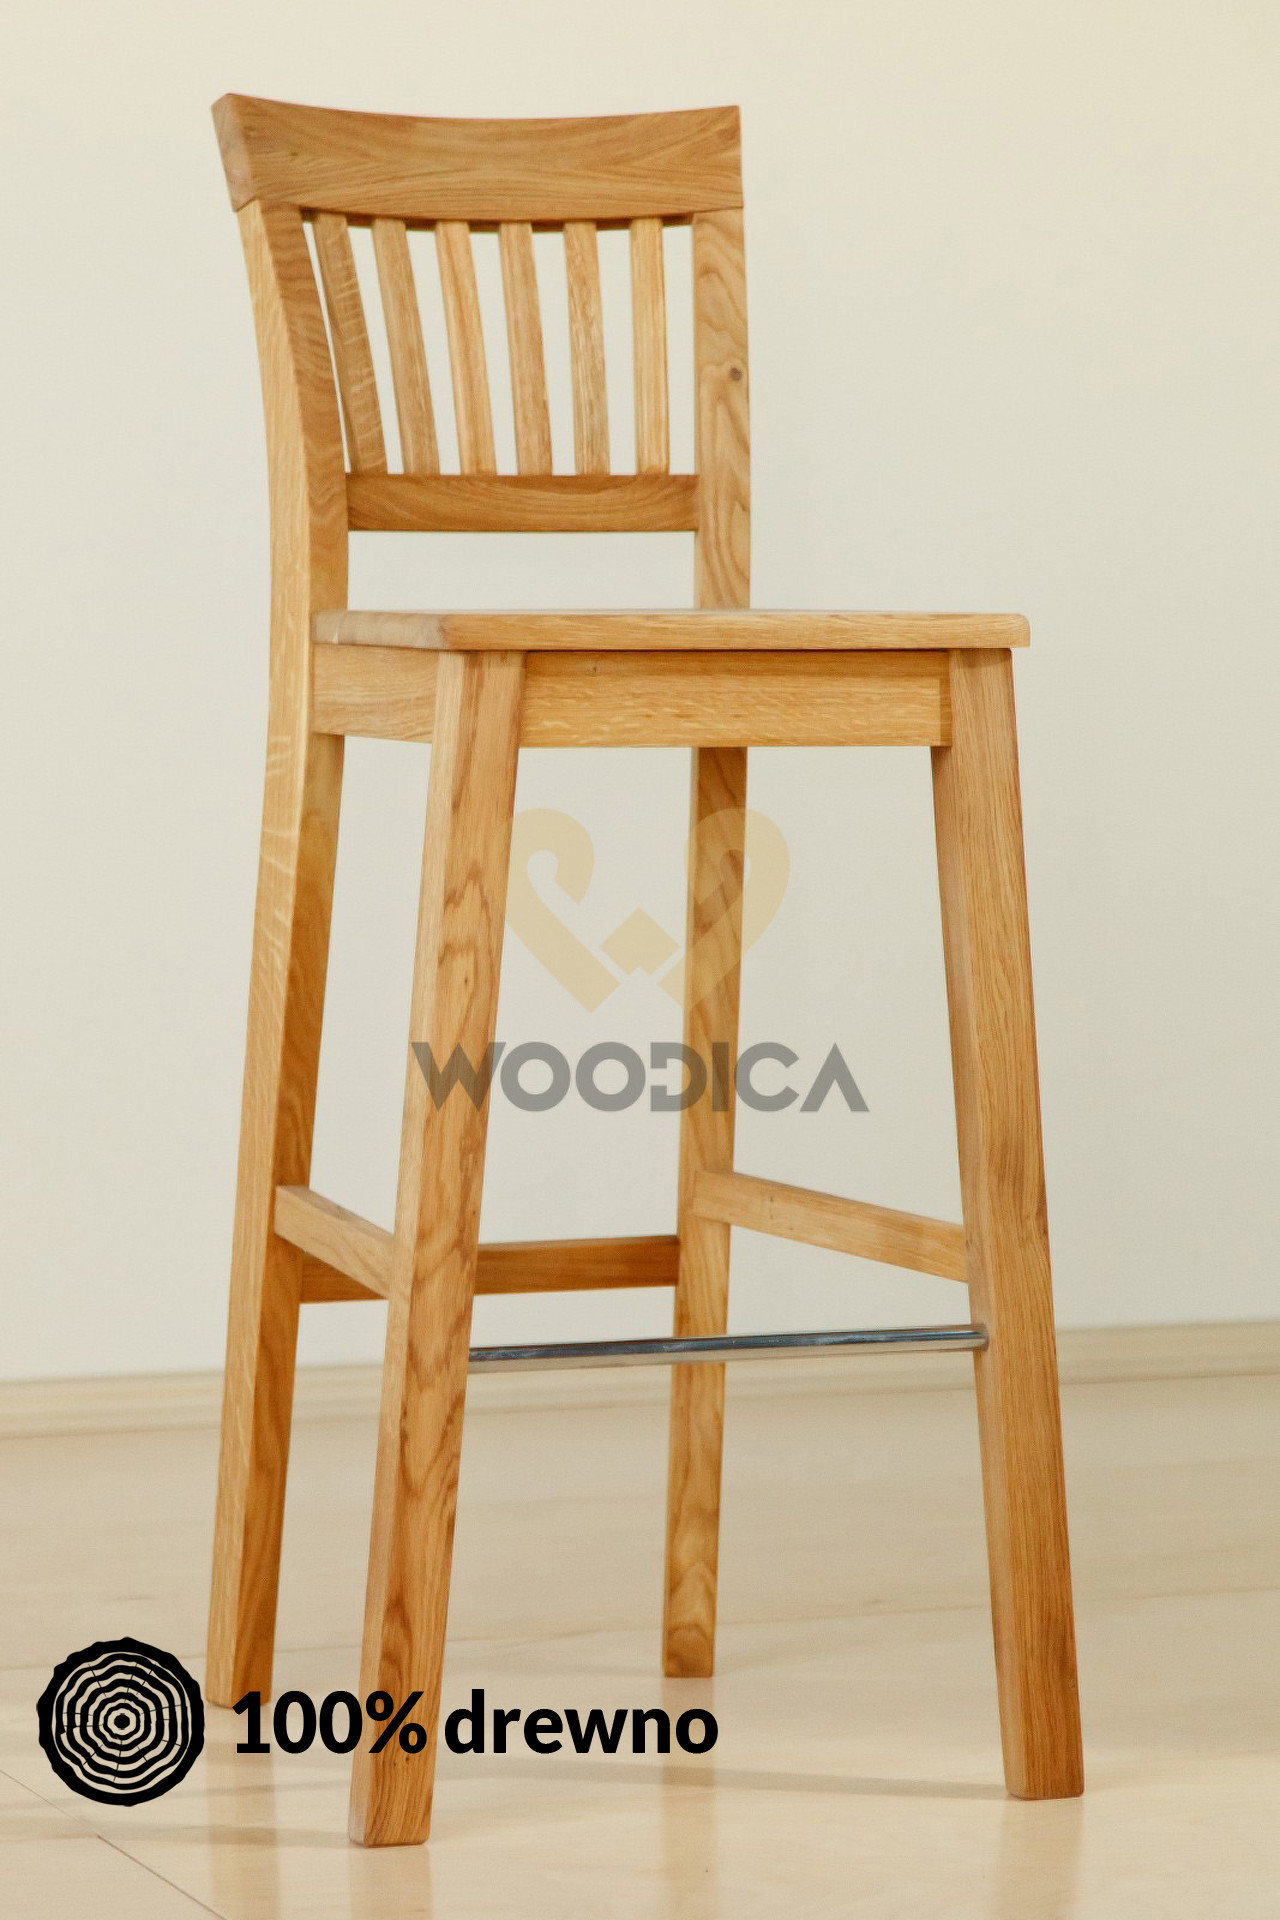 Woodica Krzesło dębowe barowe 01 Dąb/Krz/Bar01